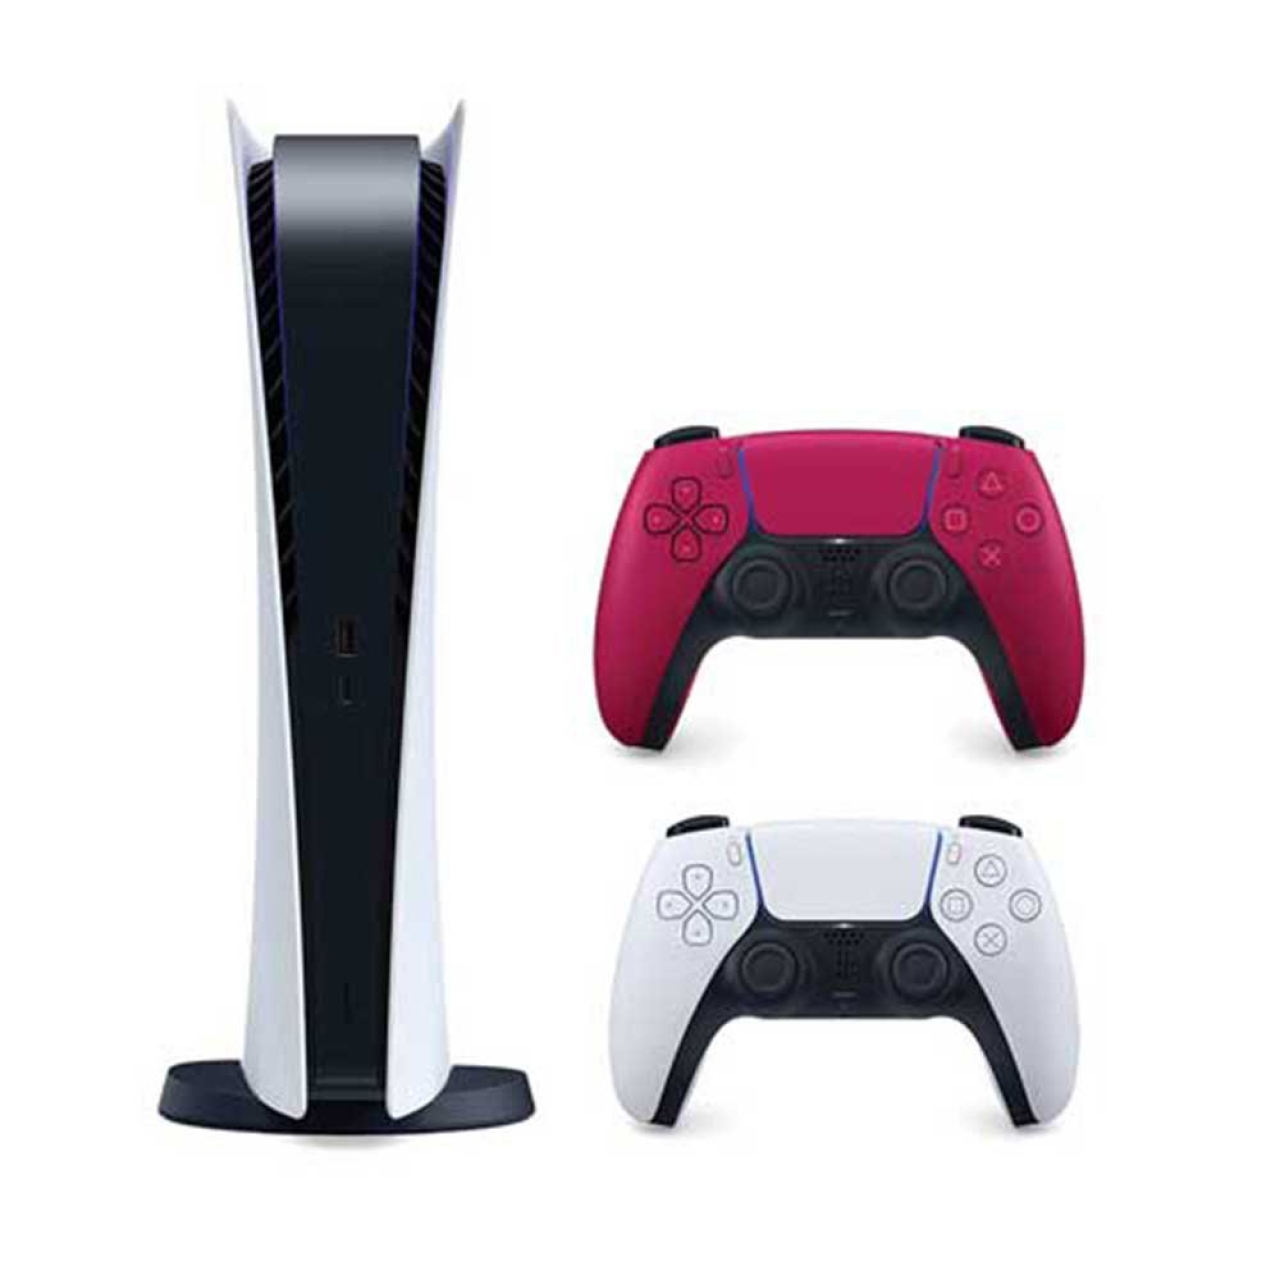 کنسول بازی سونی مدل Playstation 5 ظرفیت 825 گیگابایت  به همراه یک دسته قرمز اضافی